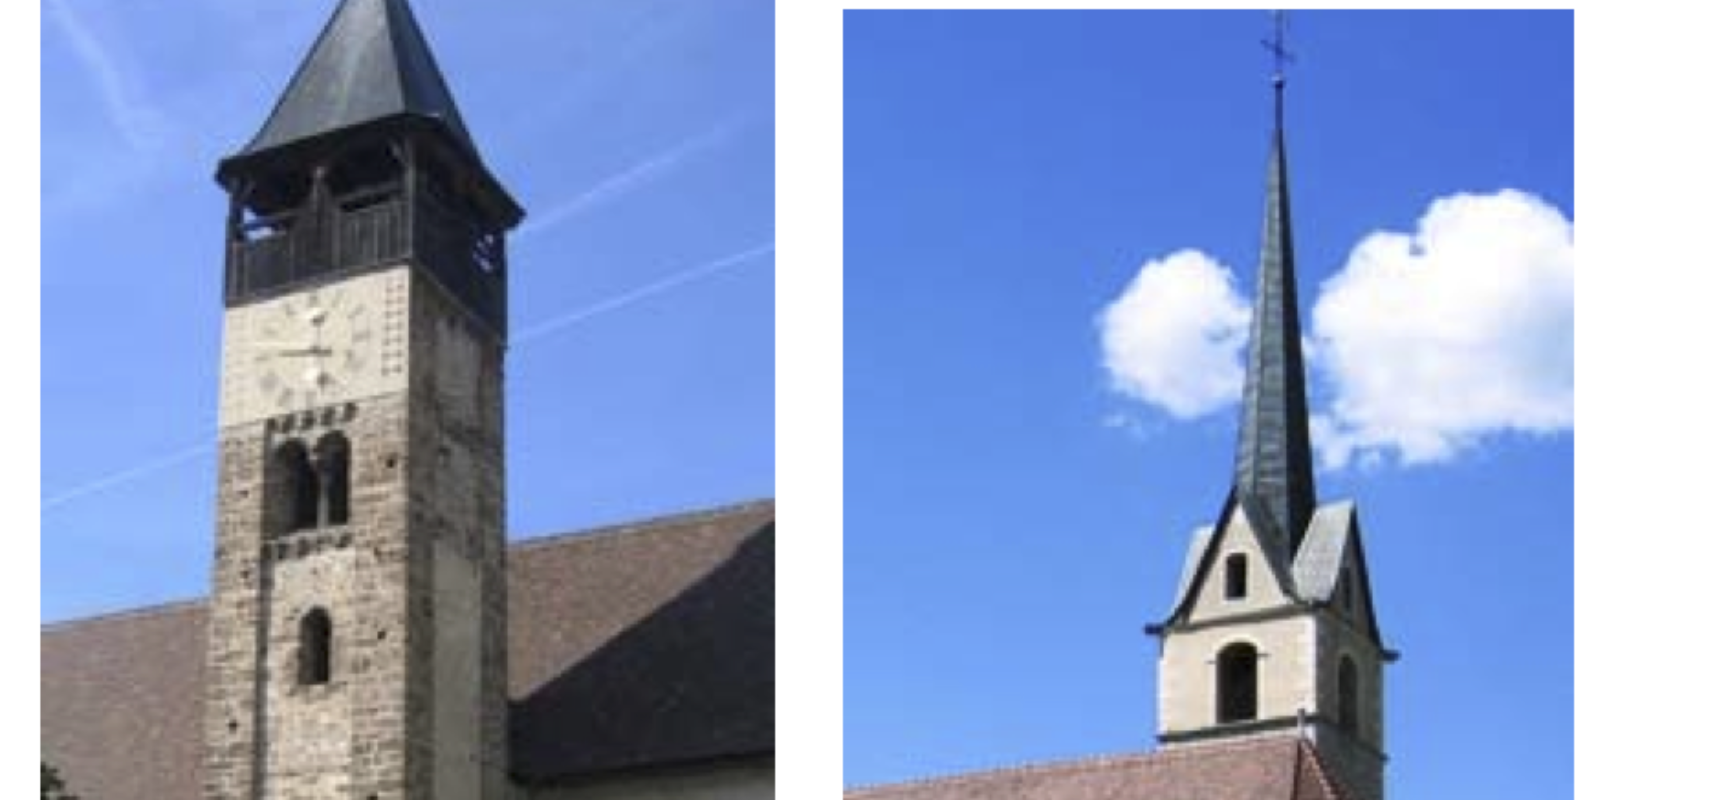 Kirchgemeinde Scharans-Fürstenau: Offene Pfarrstelle – Bewerbung noch bis 30. September möglich